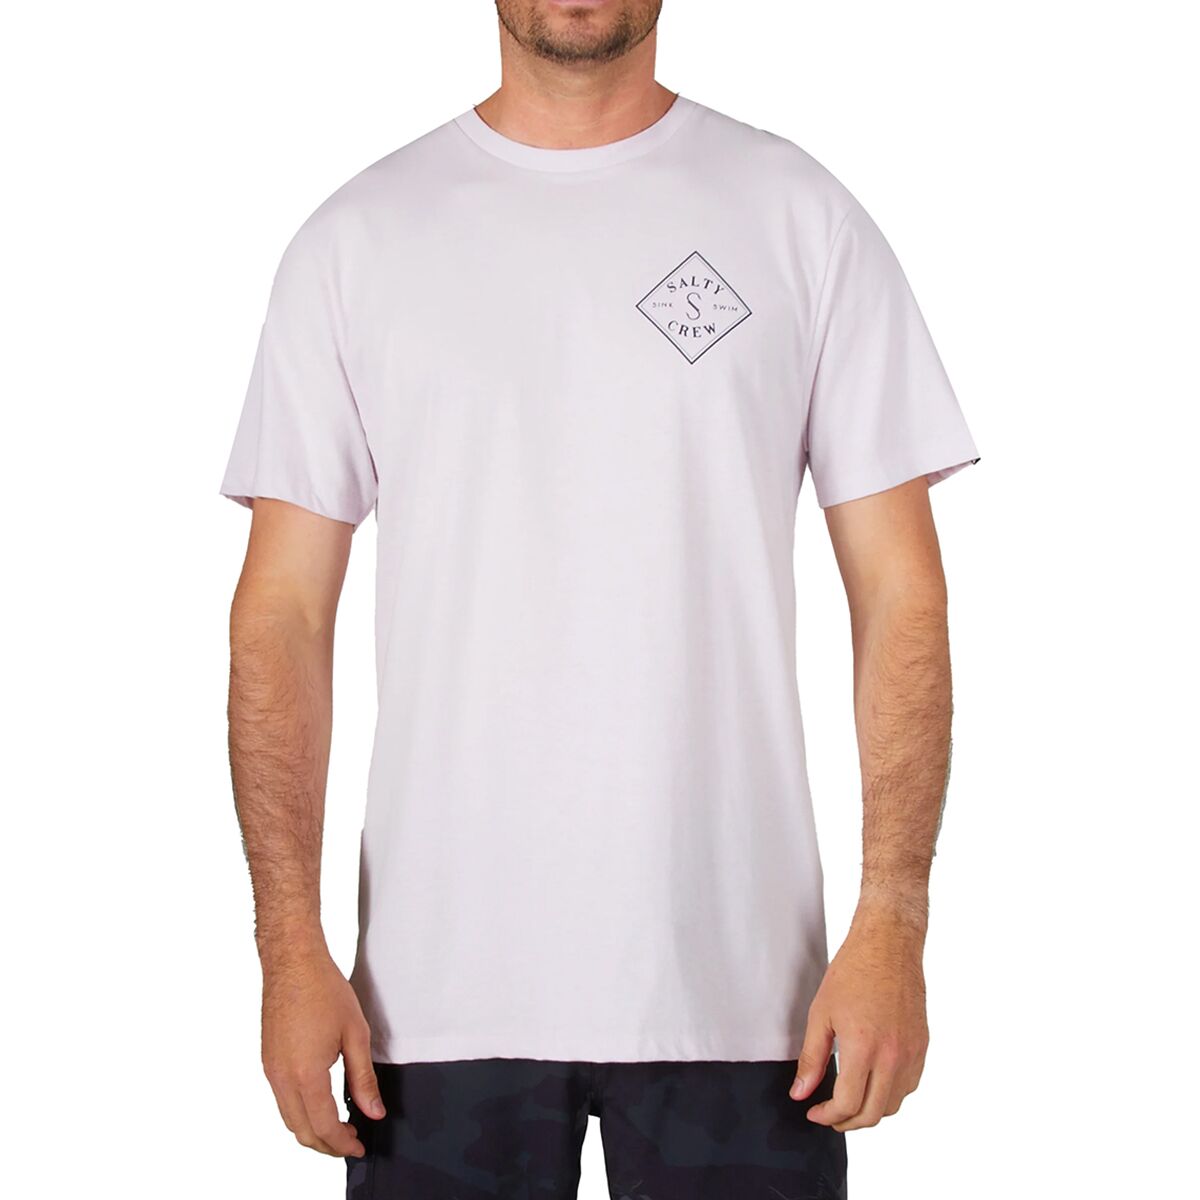 Tippet Premium Short-Sleeve T-Shirt - Men